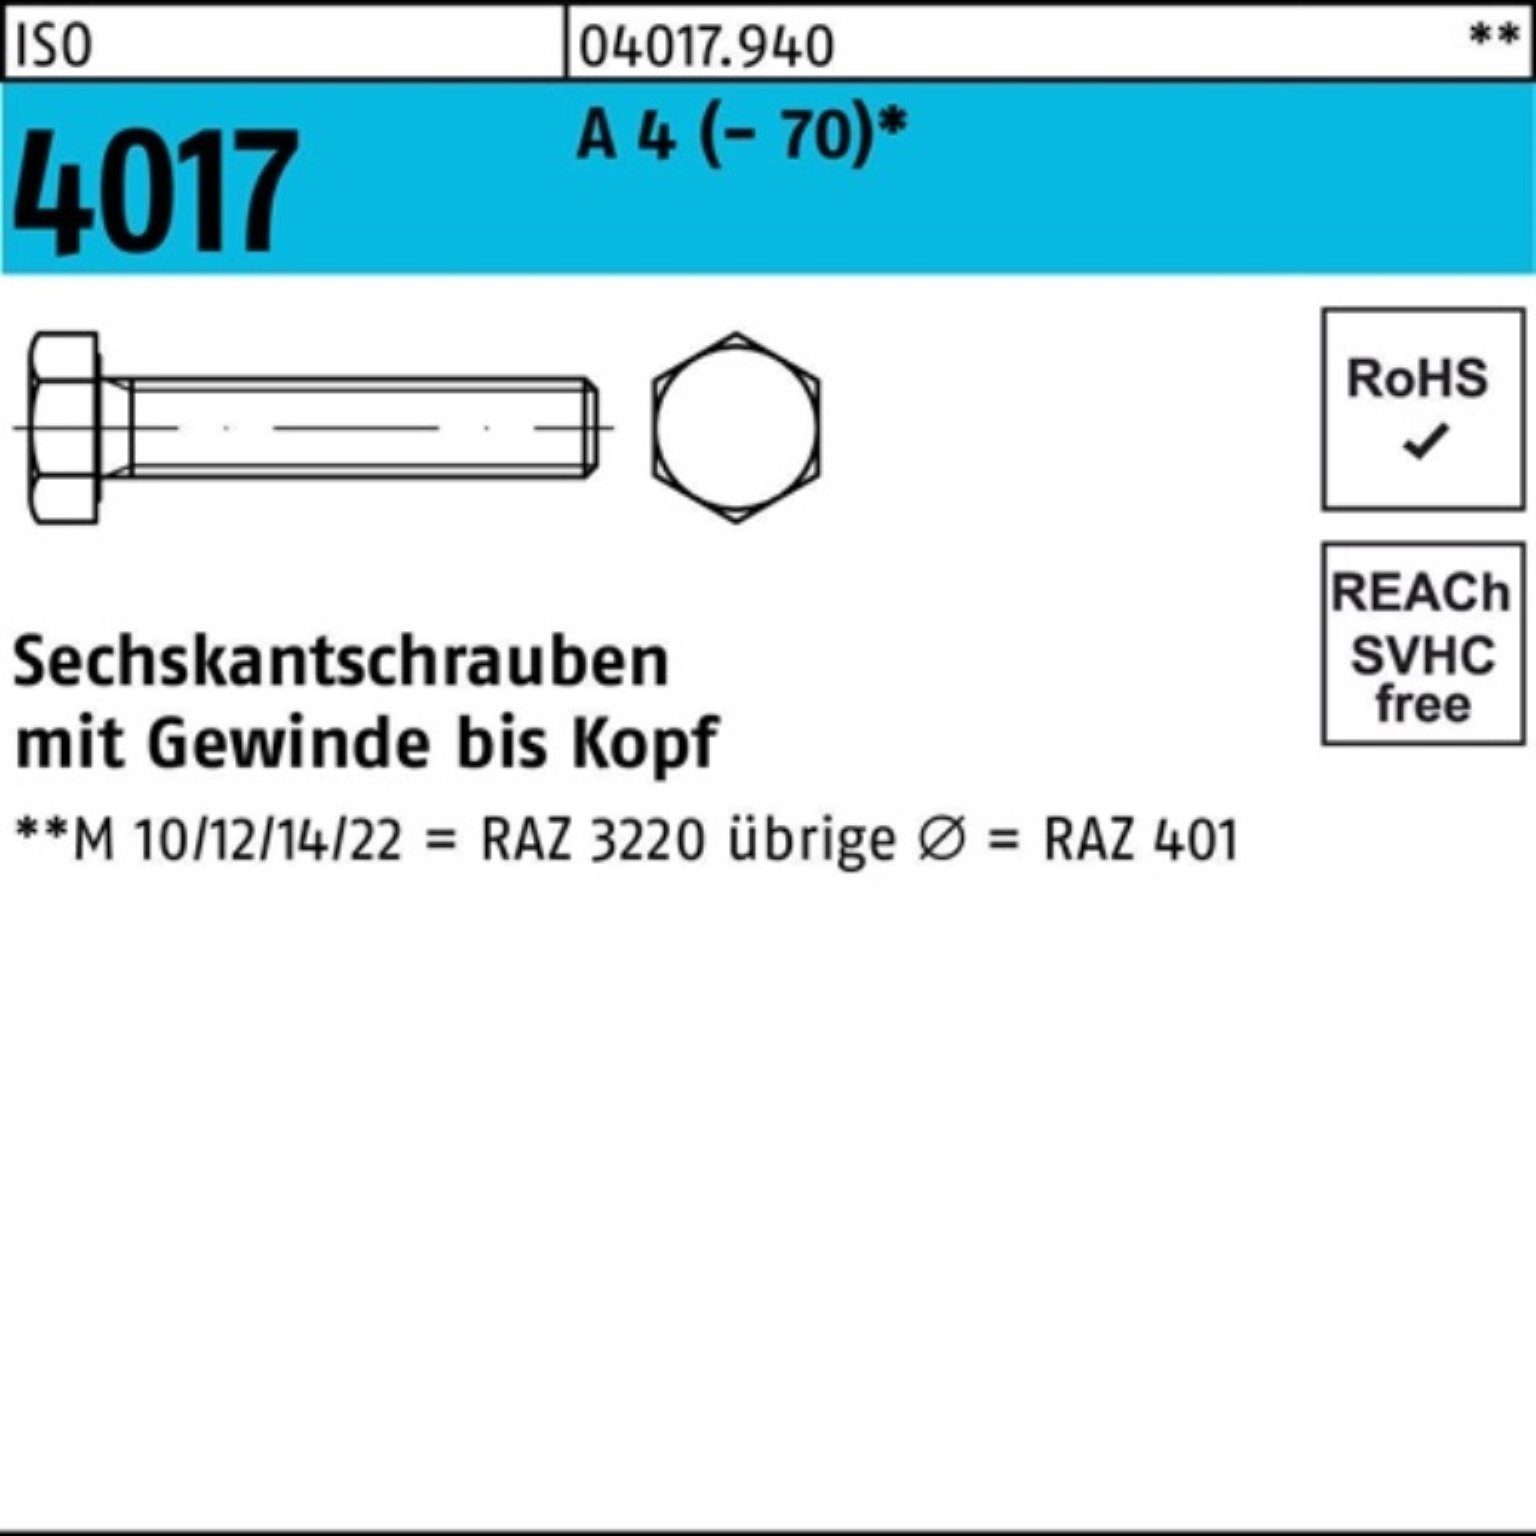 110 1 4017 ISO A M16x (70) 4 Sechskantschraube Pack 100er Bufab Sechskantschraube Stück VG